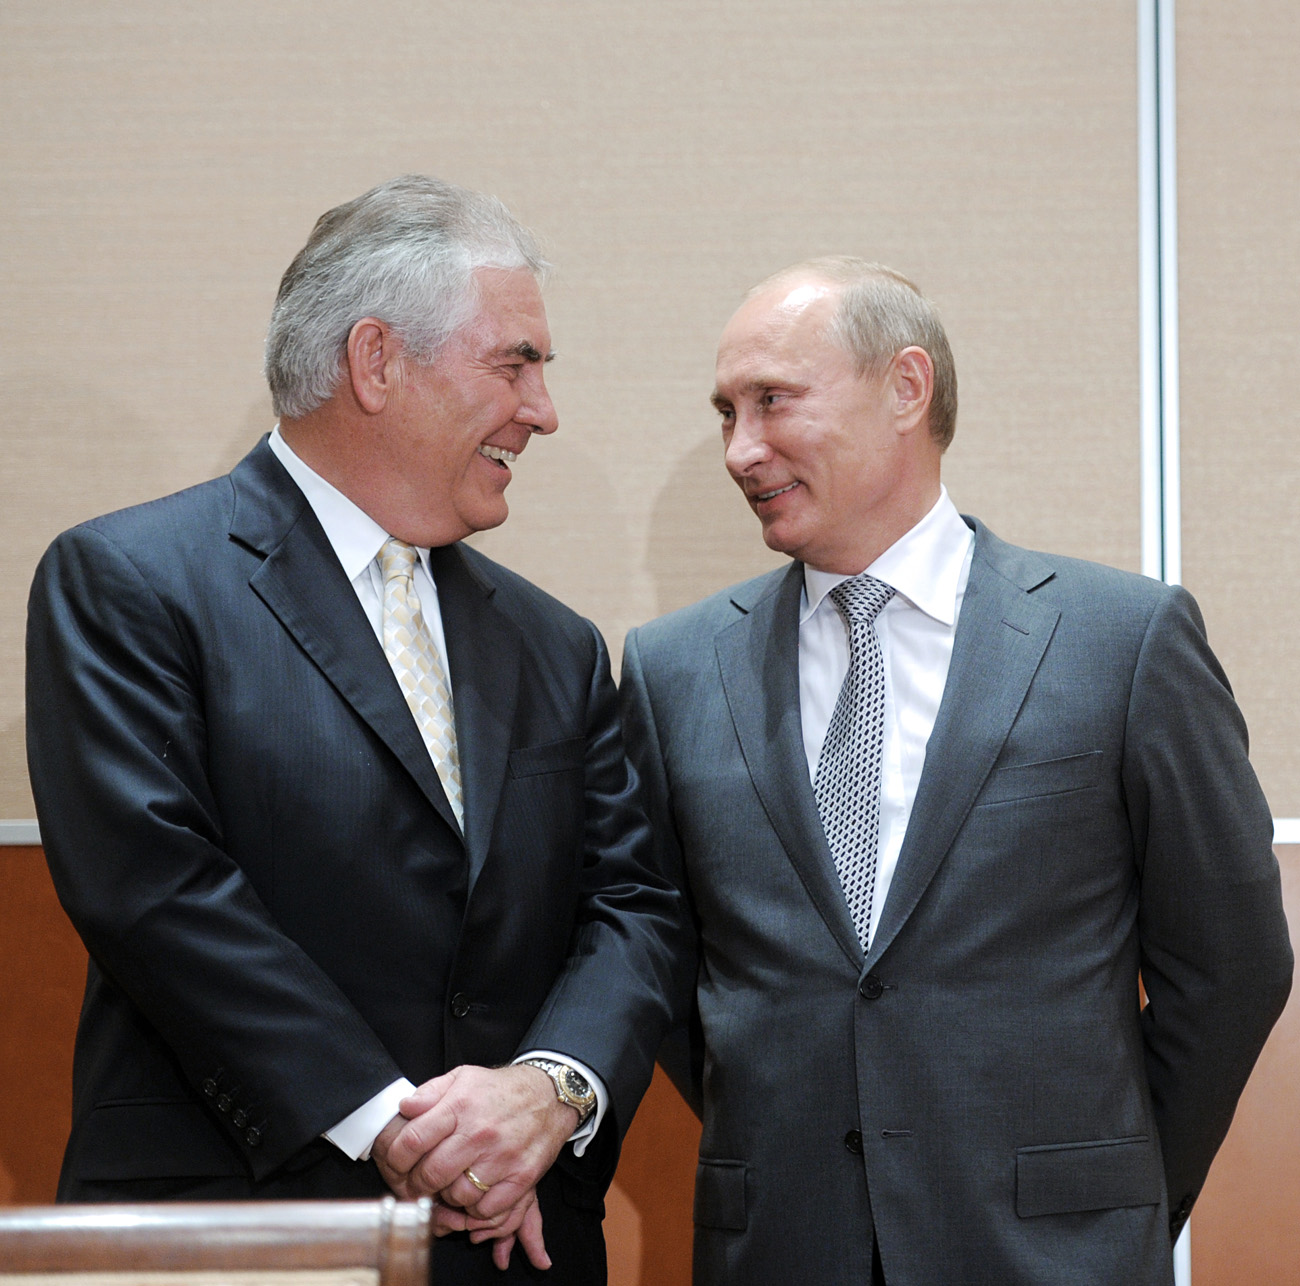 Pútin (dir) e Tillerson durante assinatura de acordo entre Rosneft e ExxonMobil, em 2011